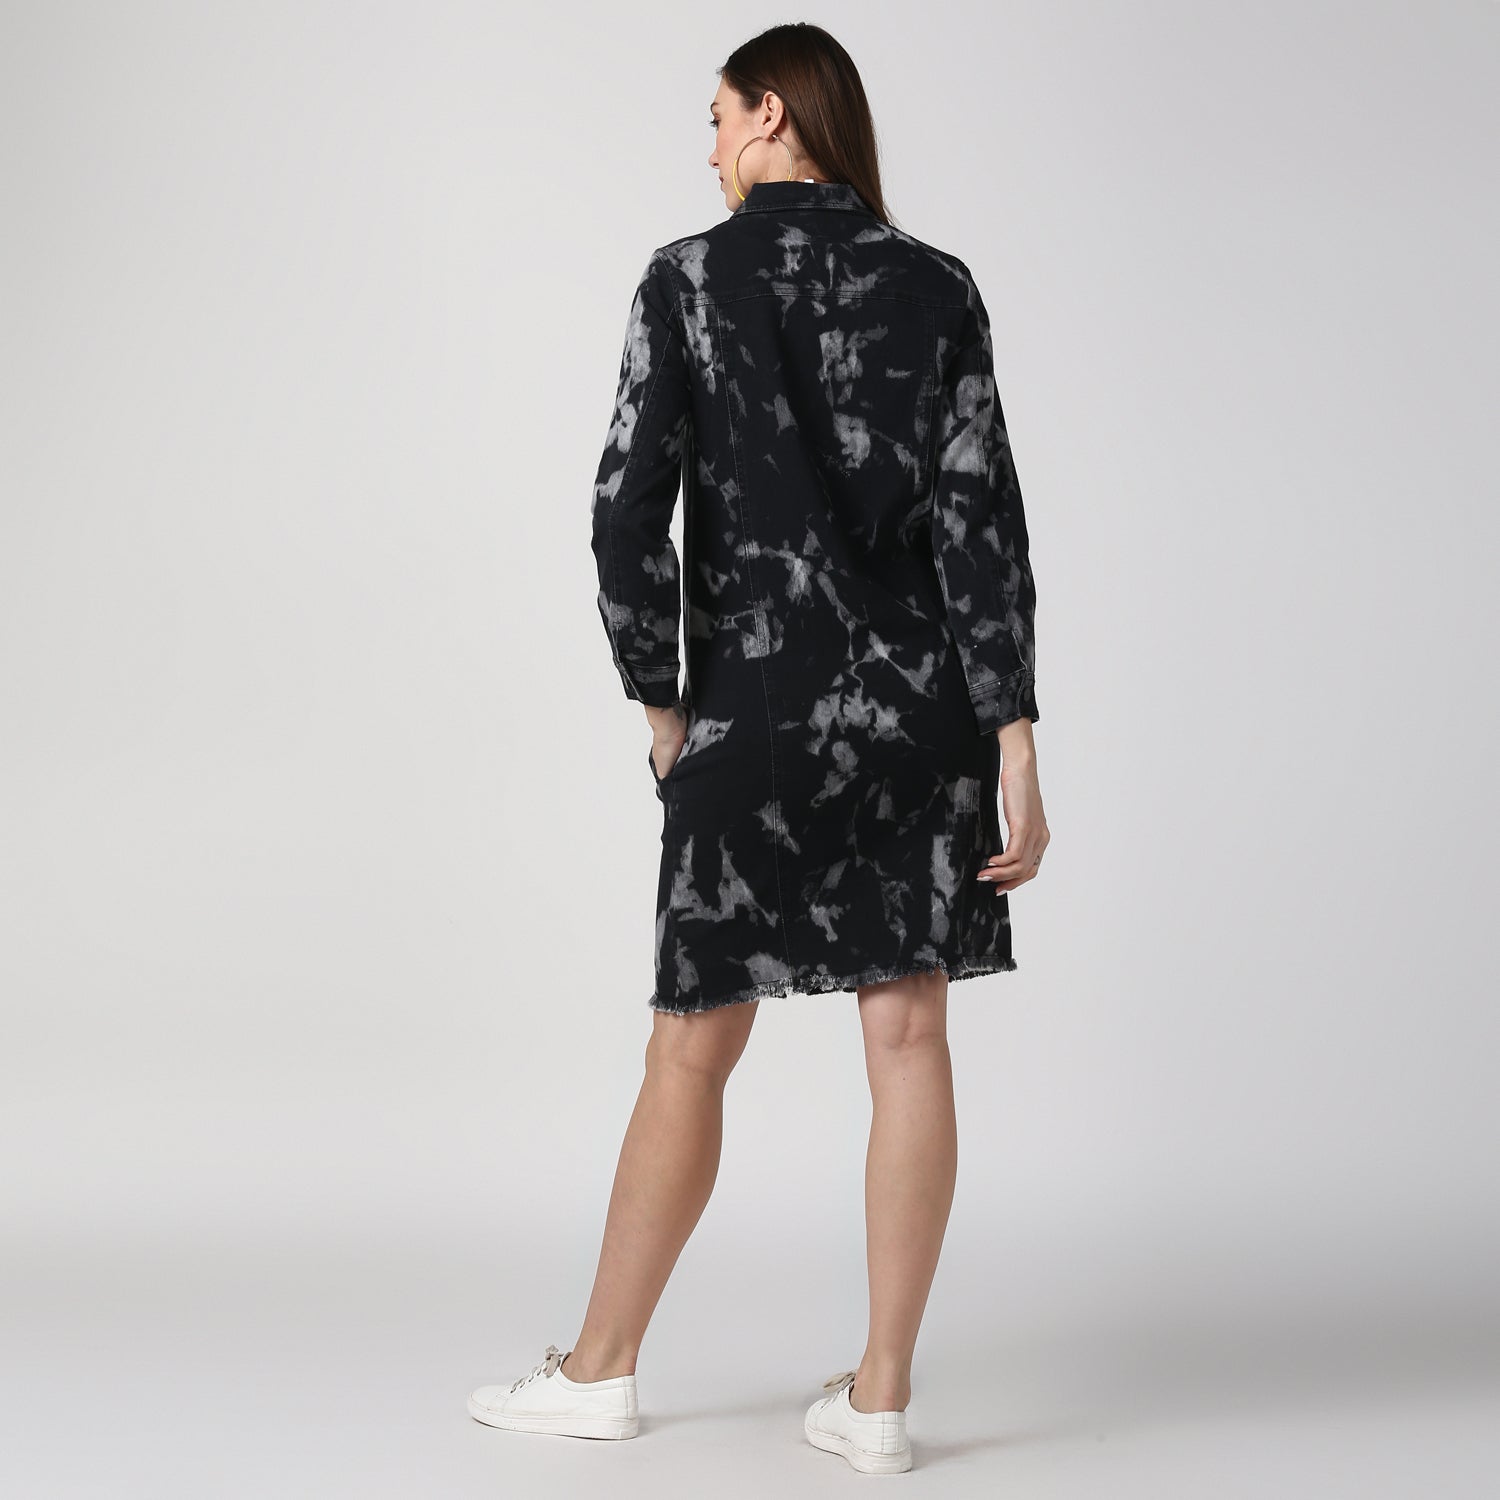 Women's Black Long Overcoat Style Denim Jacket with Cloud effect - StyleStone